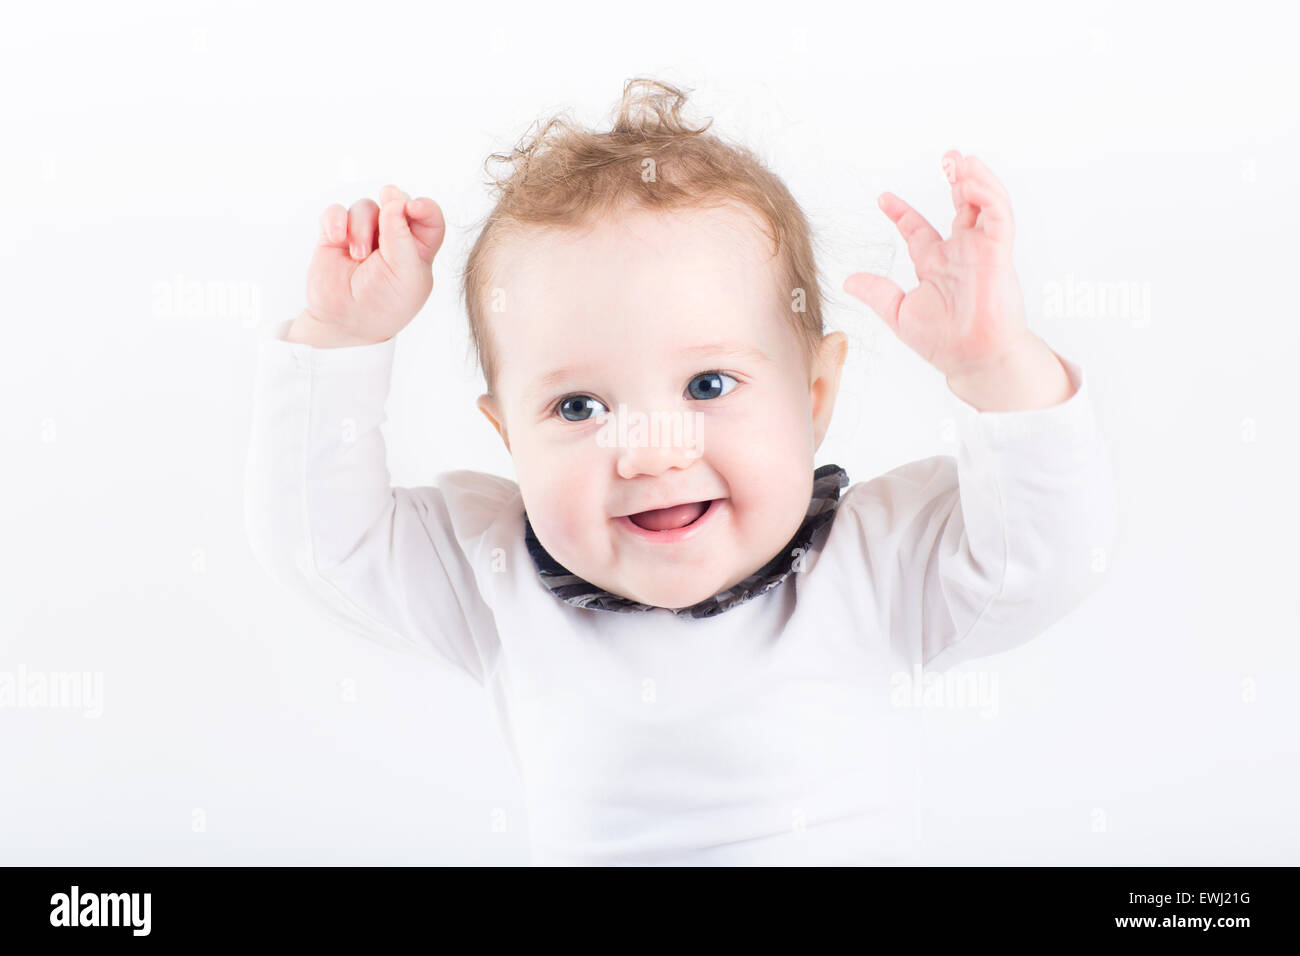 Funny little baby con le mani in aria Foto Stock